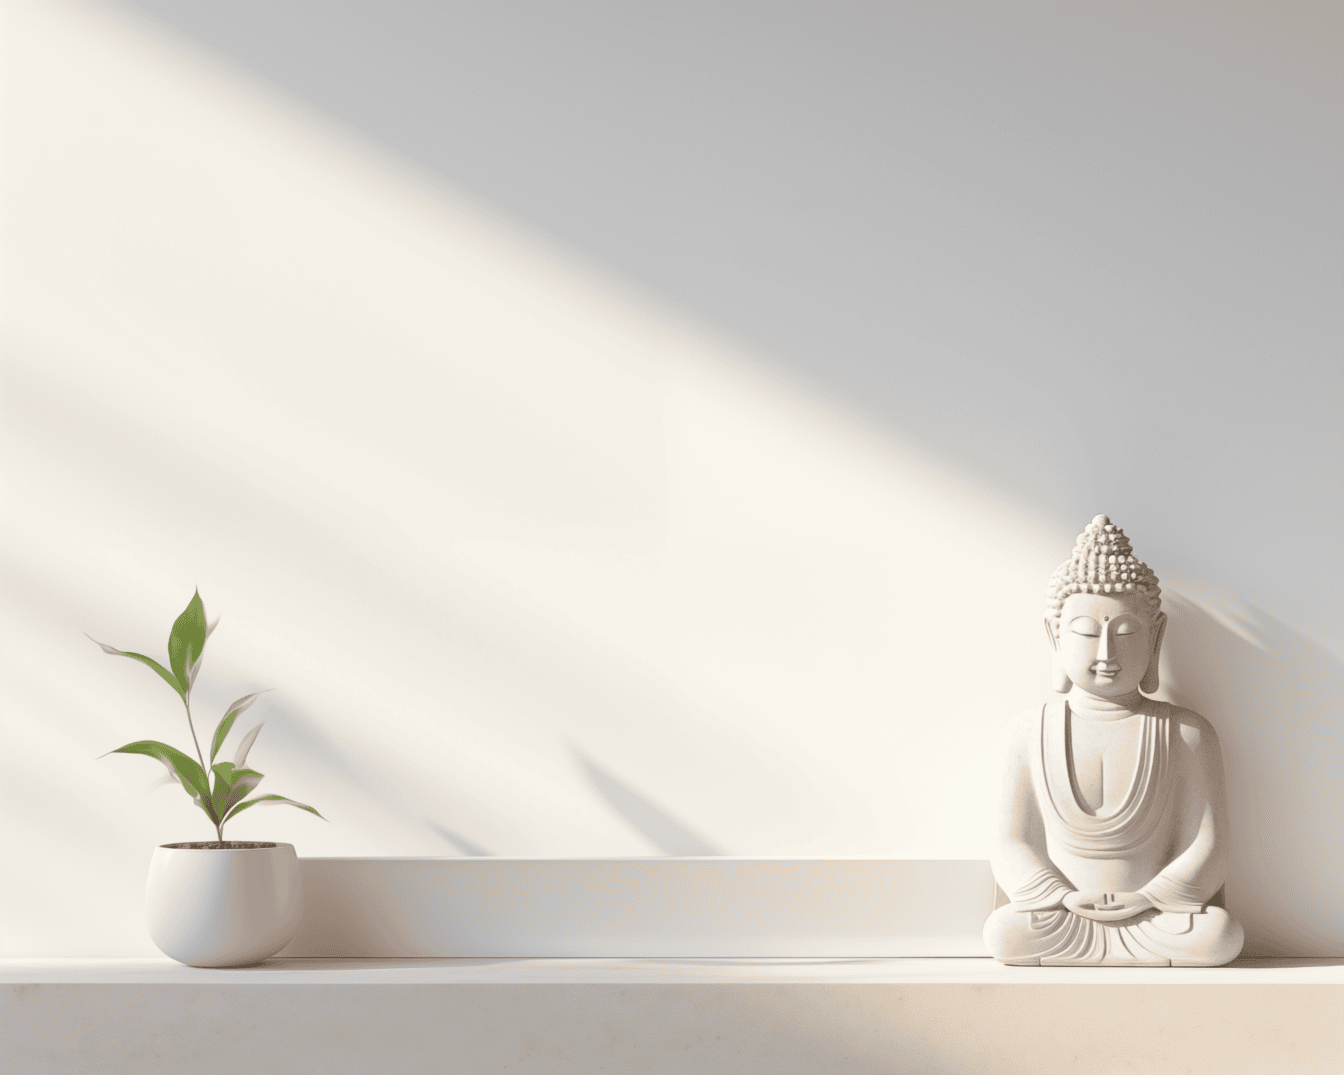 Statuetta bianca di un buddha in meditazione in una posizione di loto su mensola su parete bianca sotto ombra delicata